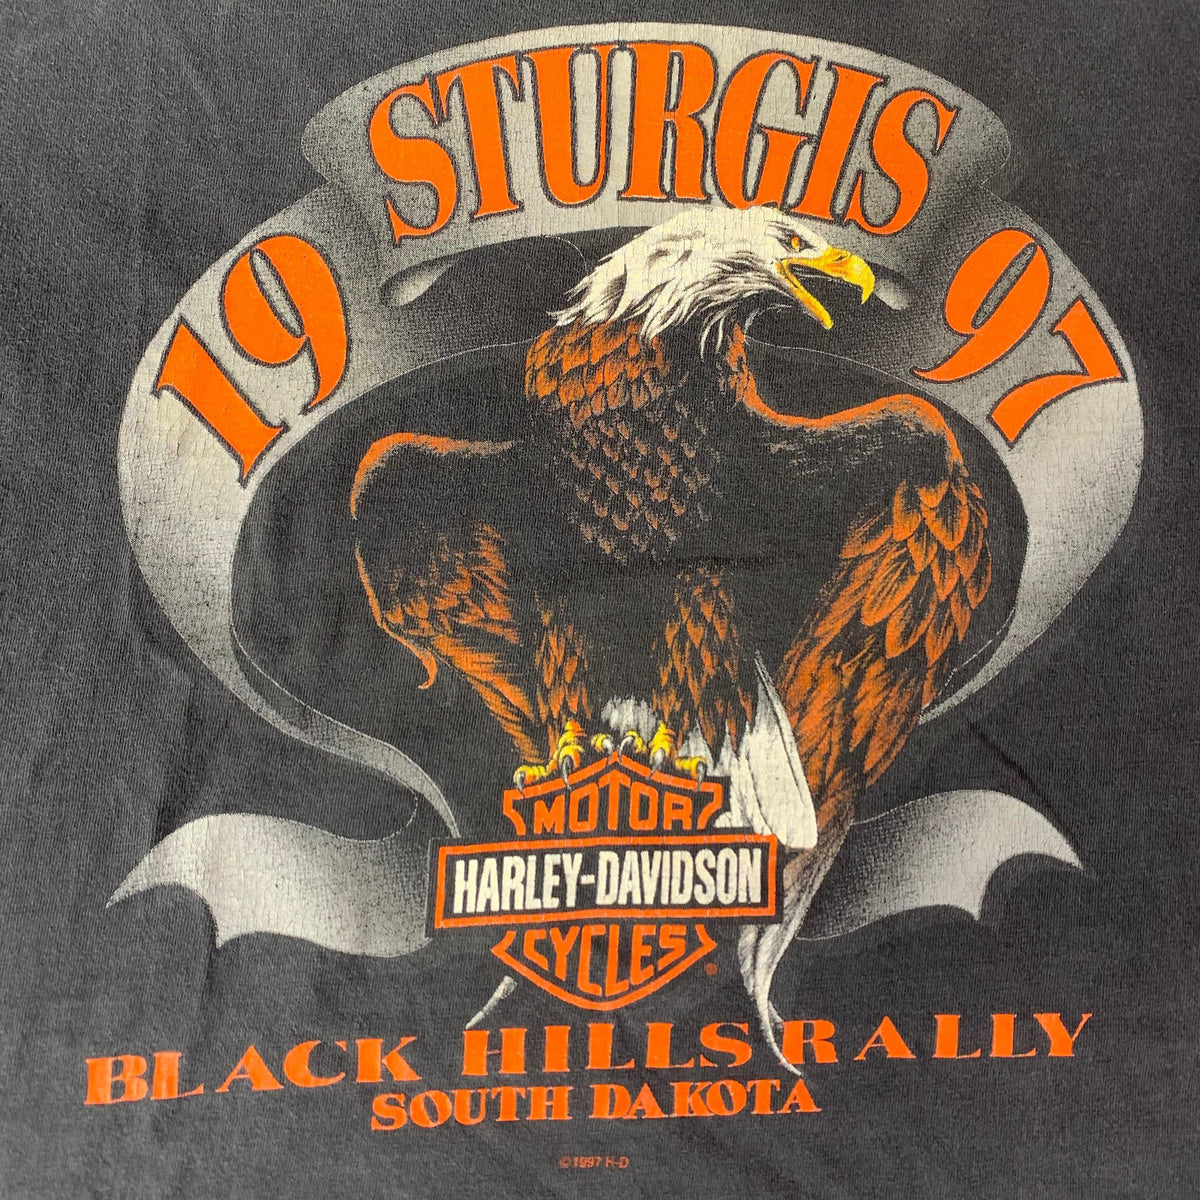 Vintage Sturgis &quot;Harley-Davidson&quot; T-Shirt - jointcustodydc